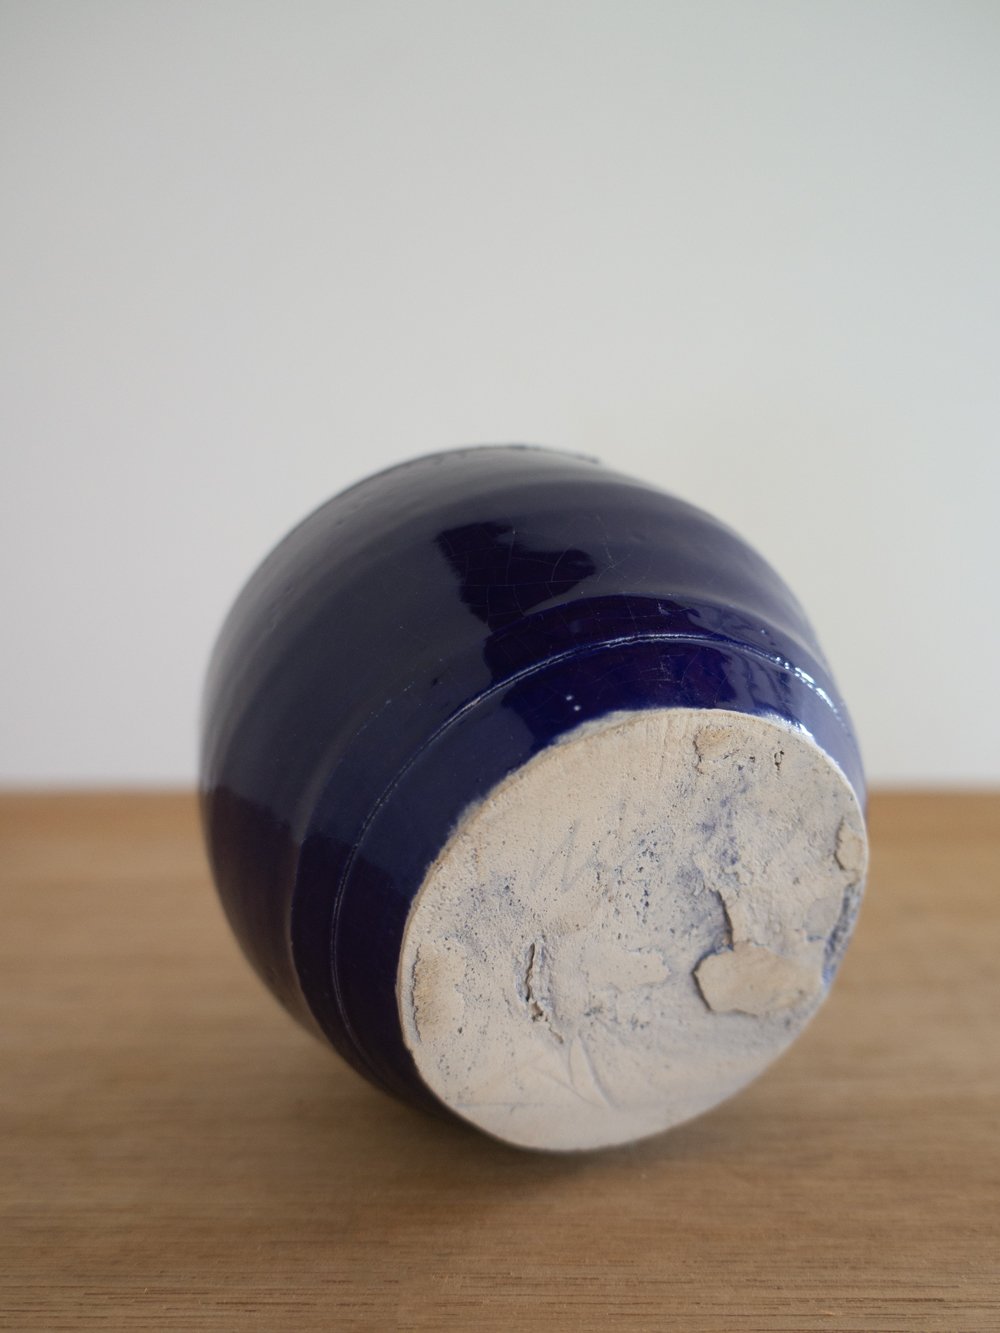 Image of blue vase